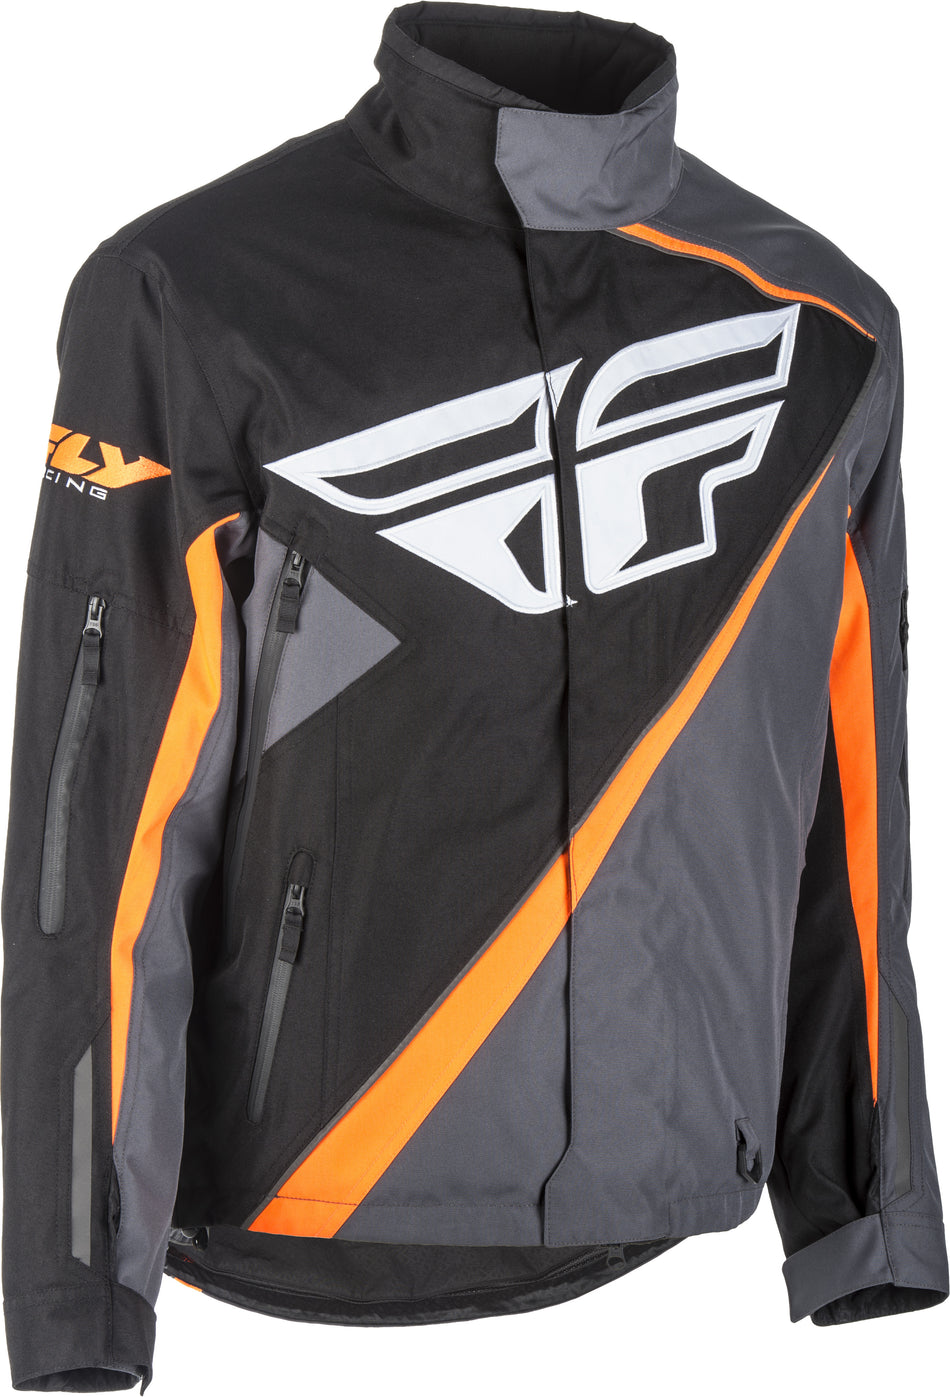 FLY RACING Snx Jacket Black/Orange/Grey 2x 470-40702X